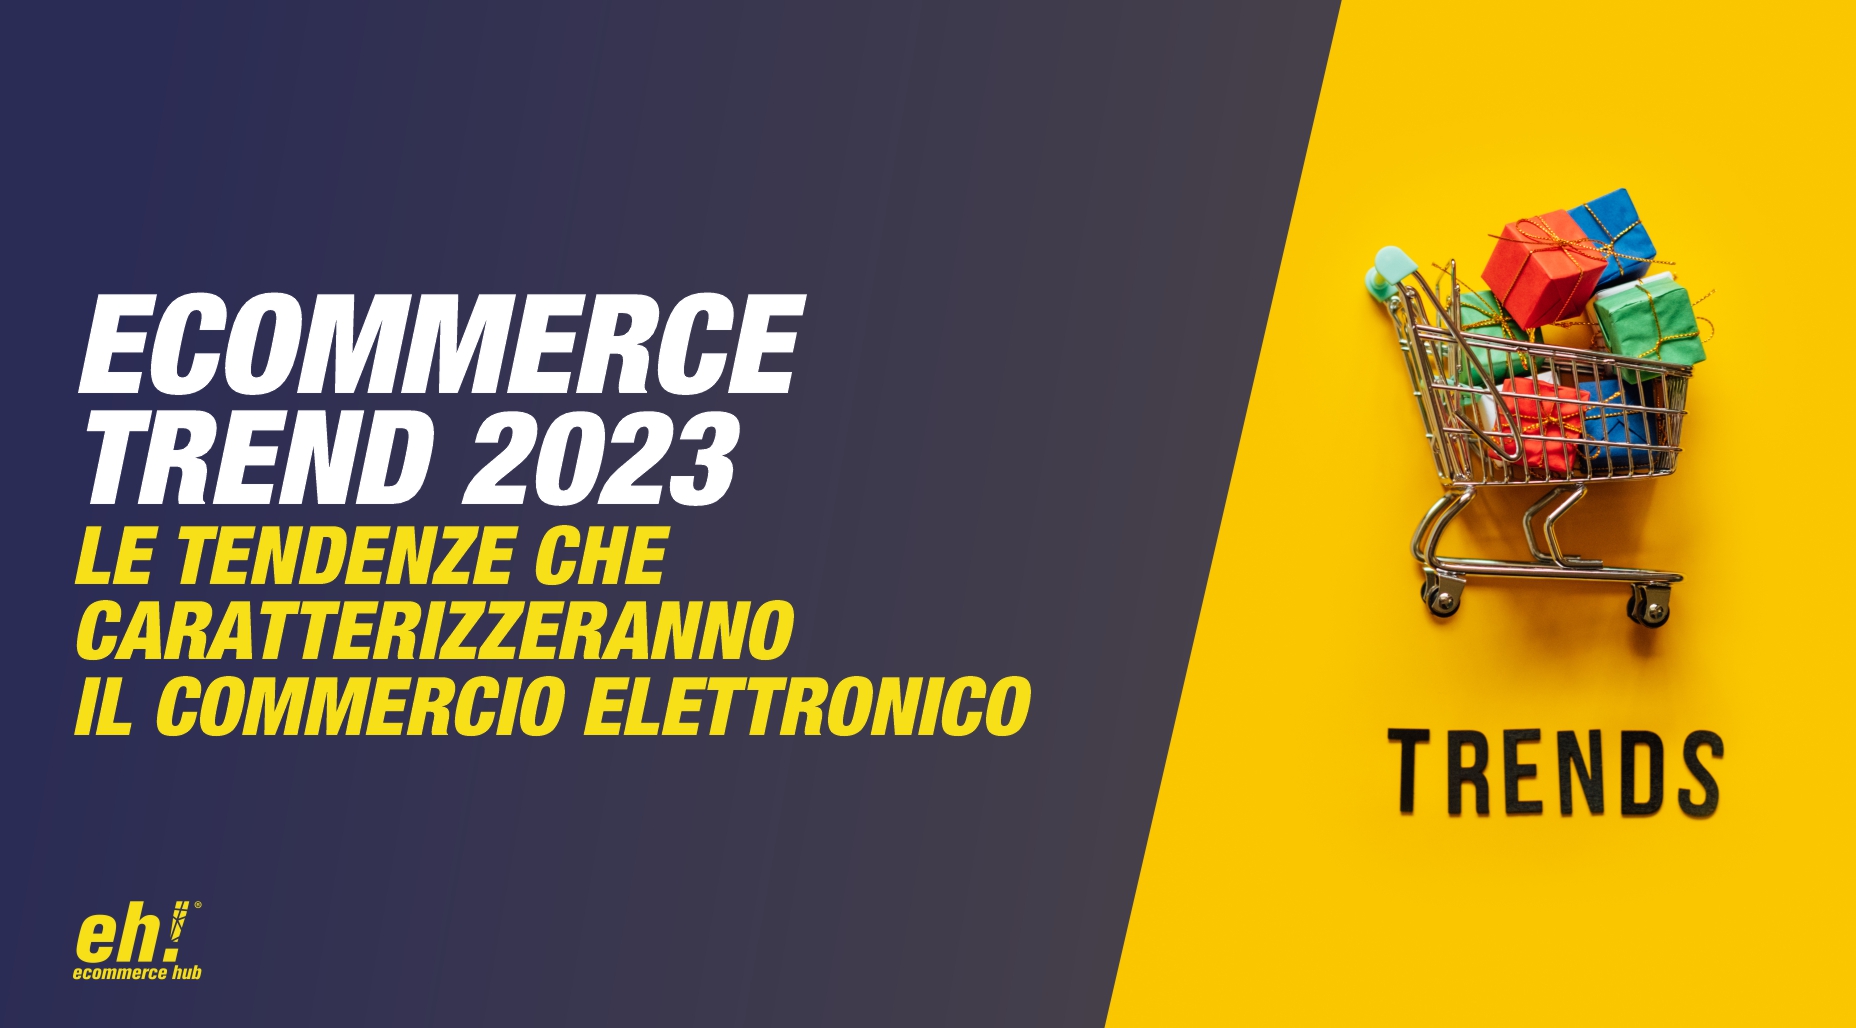 ecommerce trend 2023 - le tendenze ecommerce che caratterizzeranno il commercio elettronico nel 2023